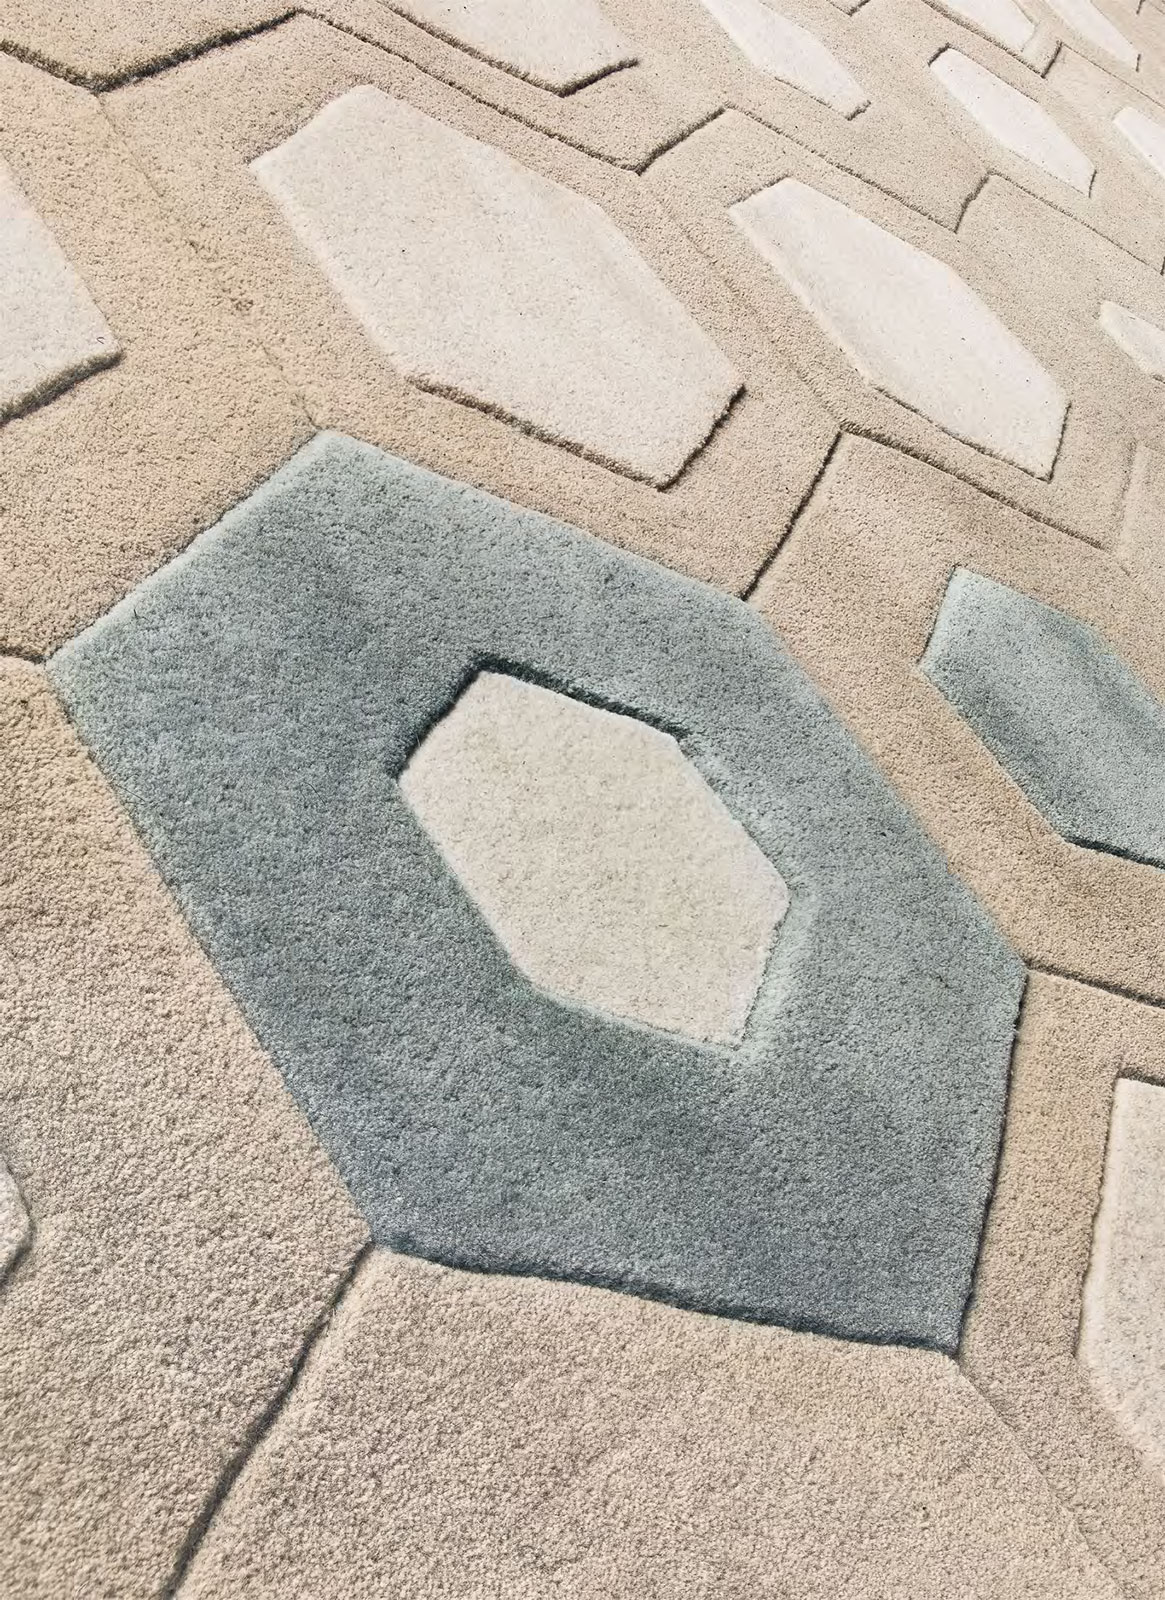 Tappeto in lana moderno dominante beige. Vendita online di tappeti design con consegna gratuita a domicilio. Tappeti geometrici di lusso taftato a mano.